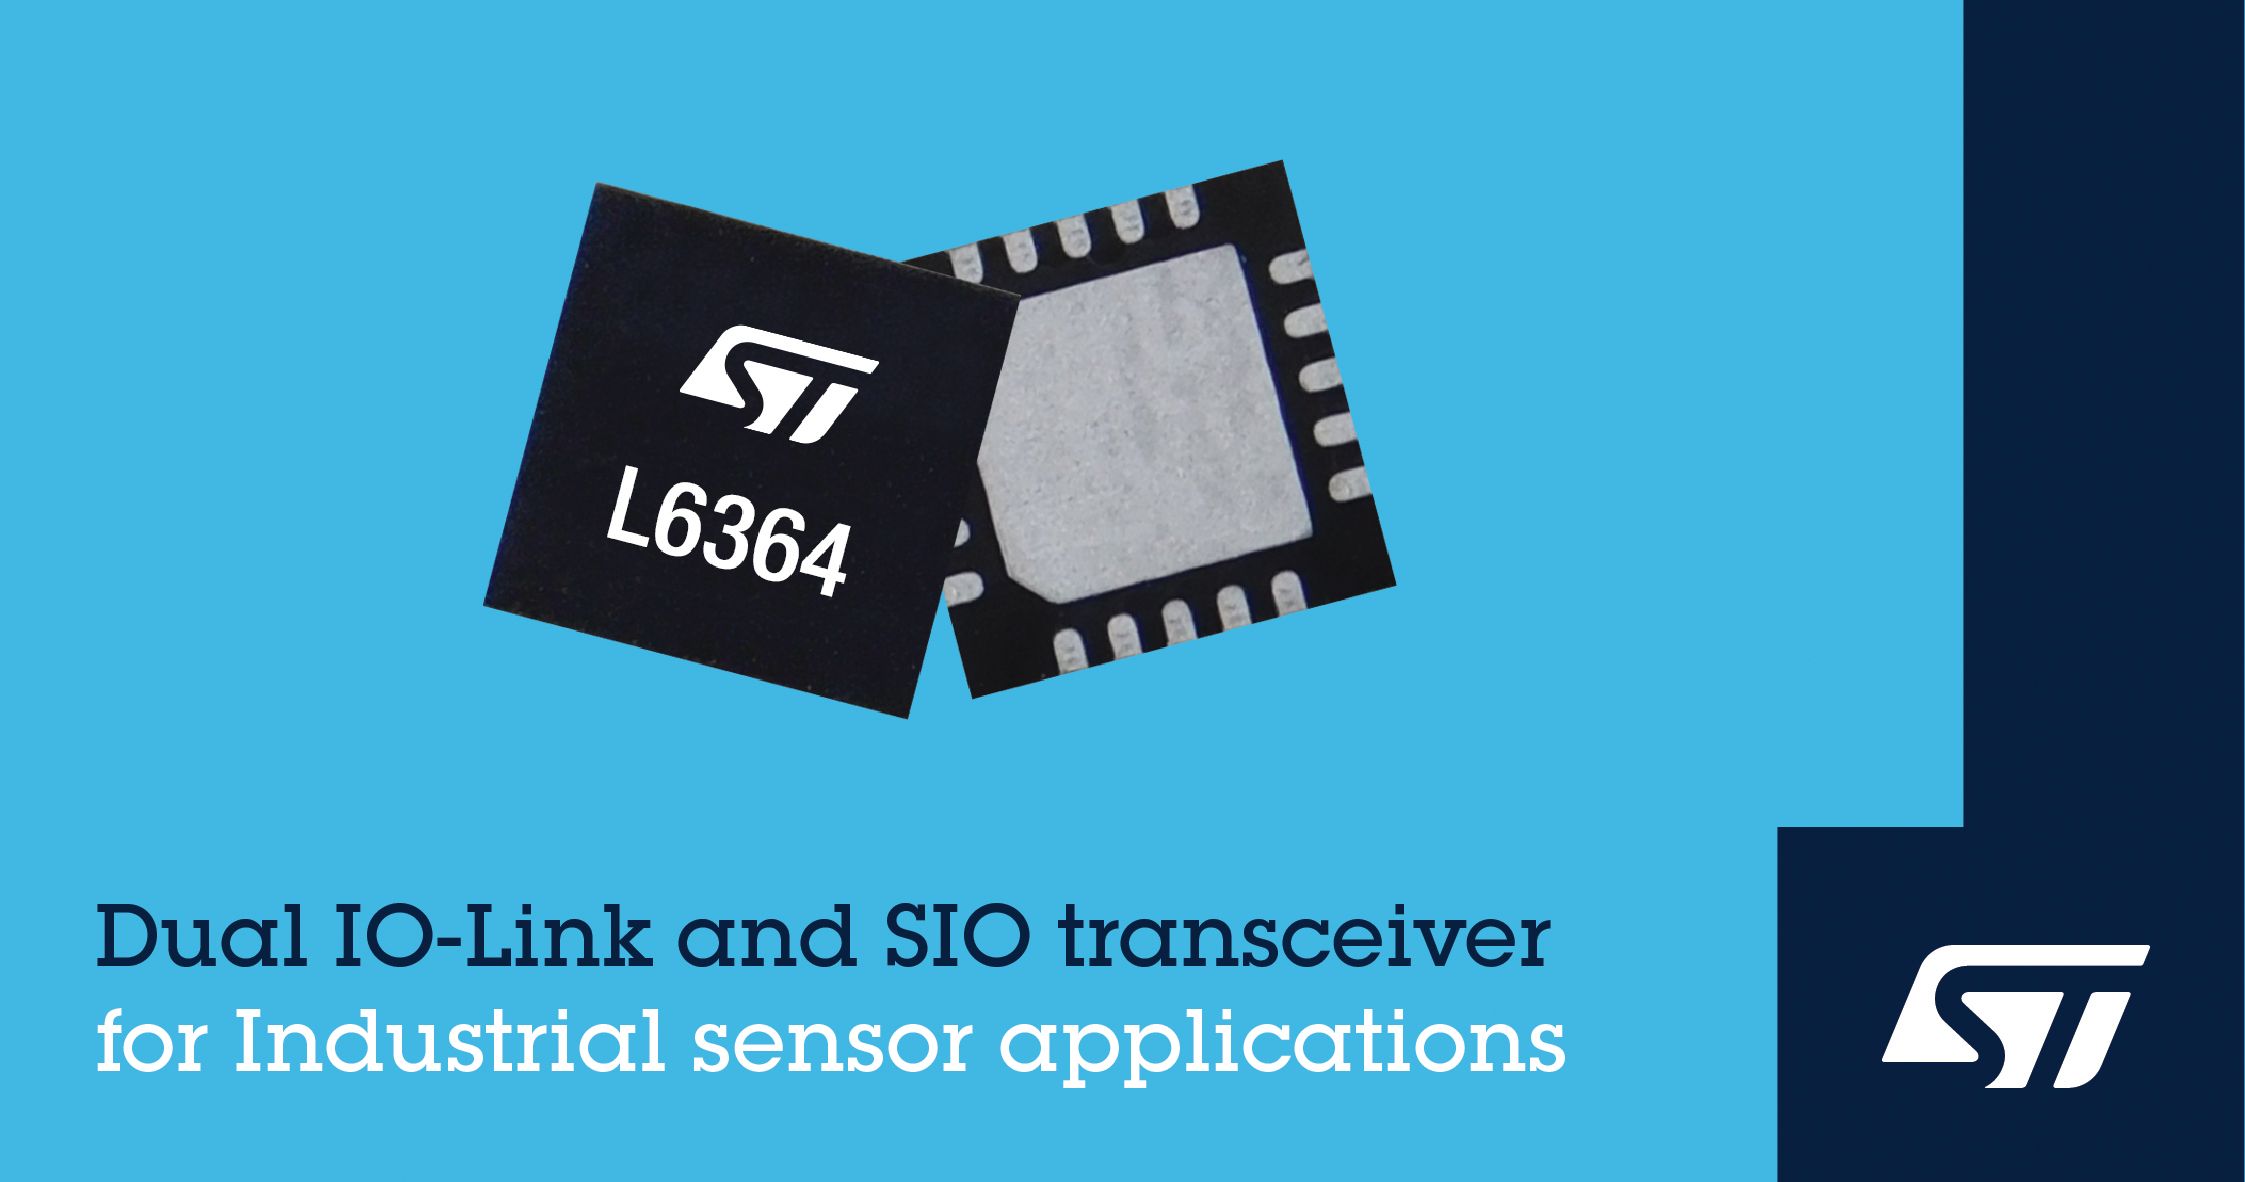 STマイクロエレクトロニクス、センサの接続を簡略化する柔軟かつ設定可能なデュアルIO-Link･SIOトランシーバを発表